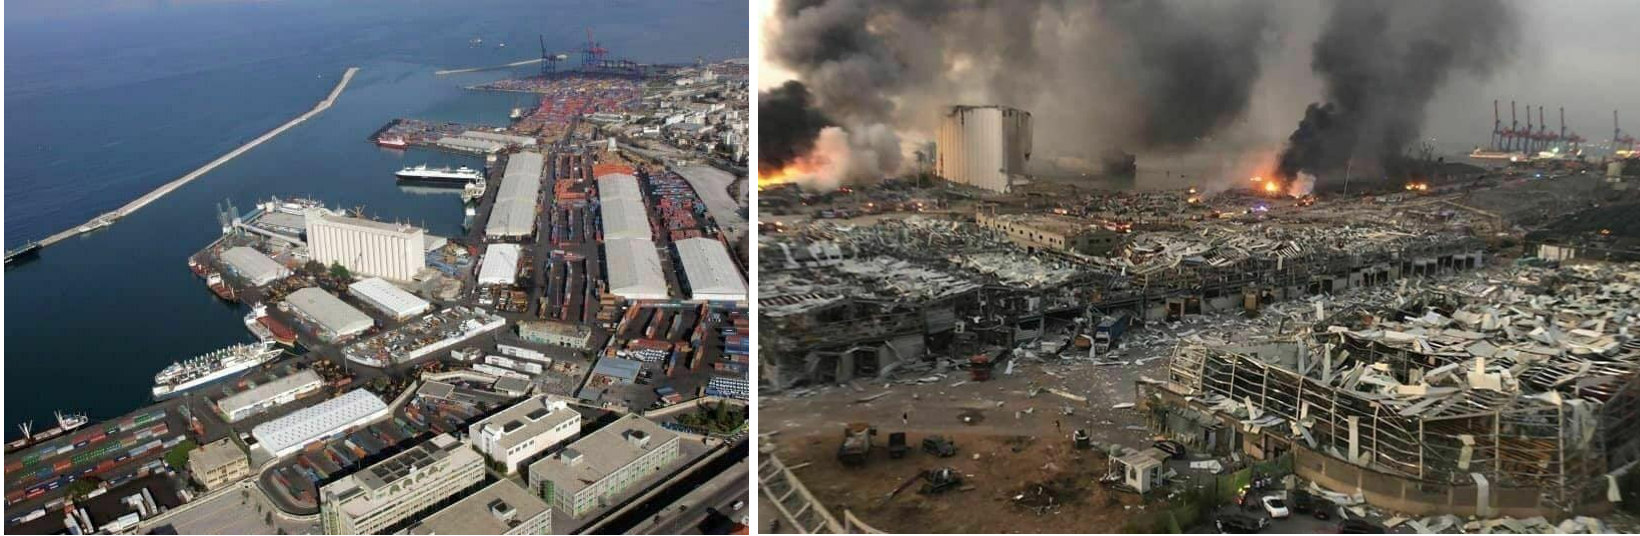 Порт в Бейруте до и после взрыва